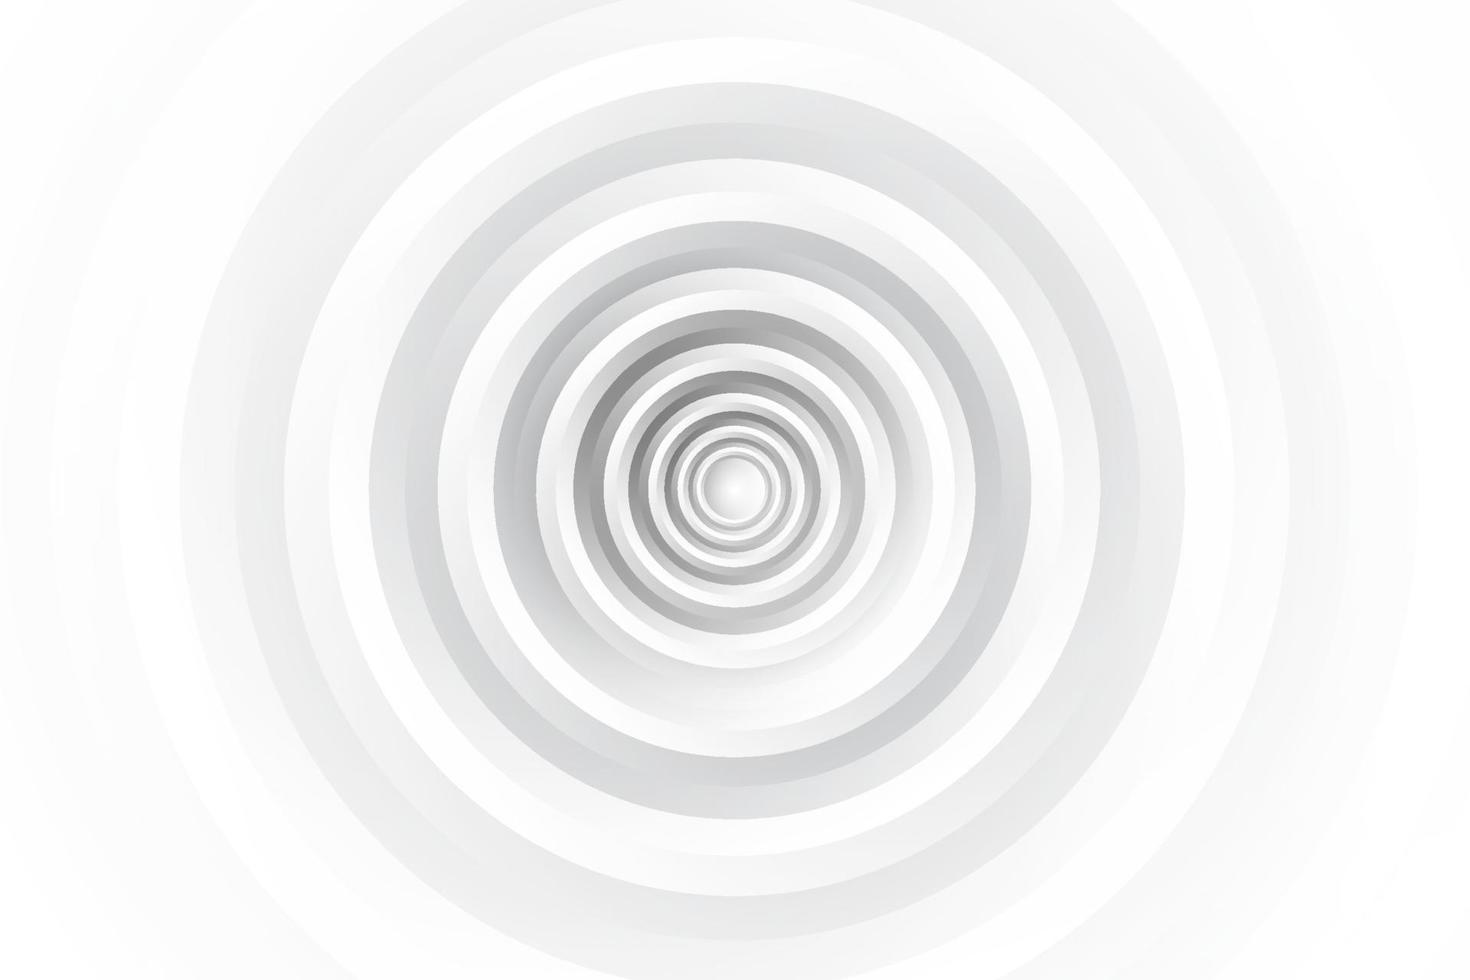 abstrakt vit och grå färg, modern designbakgrund med geometrisk rund form. vektor illustration.